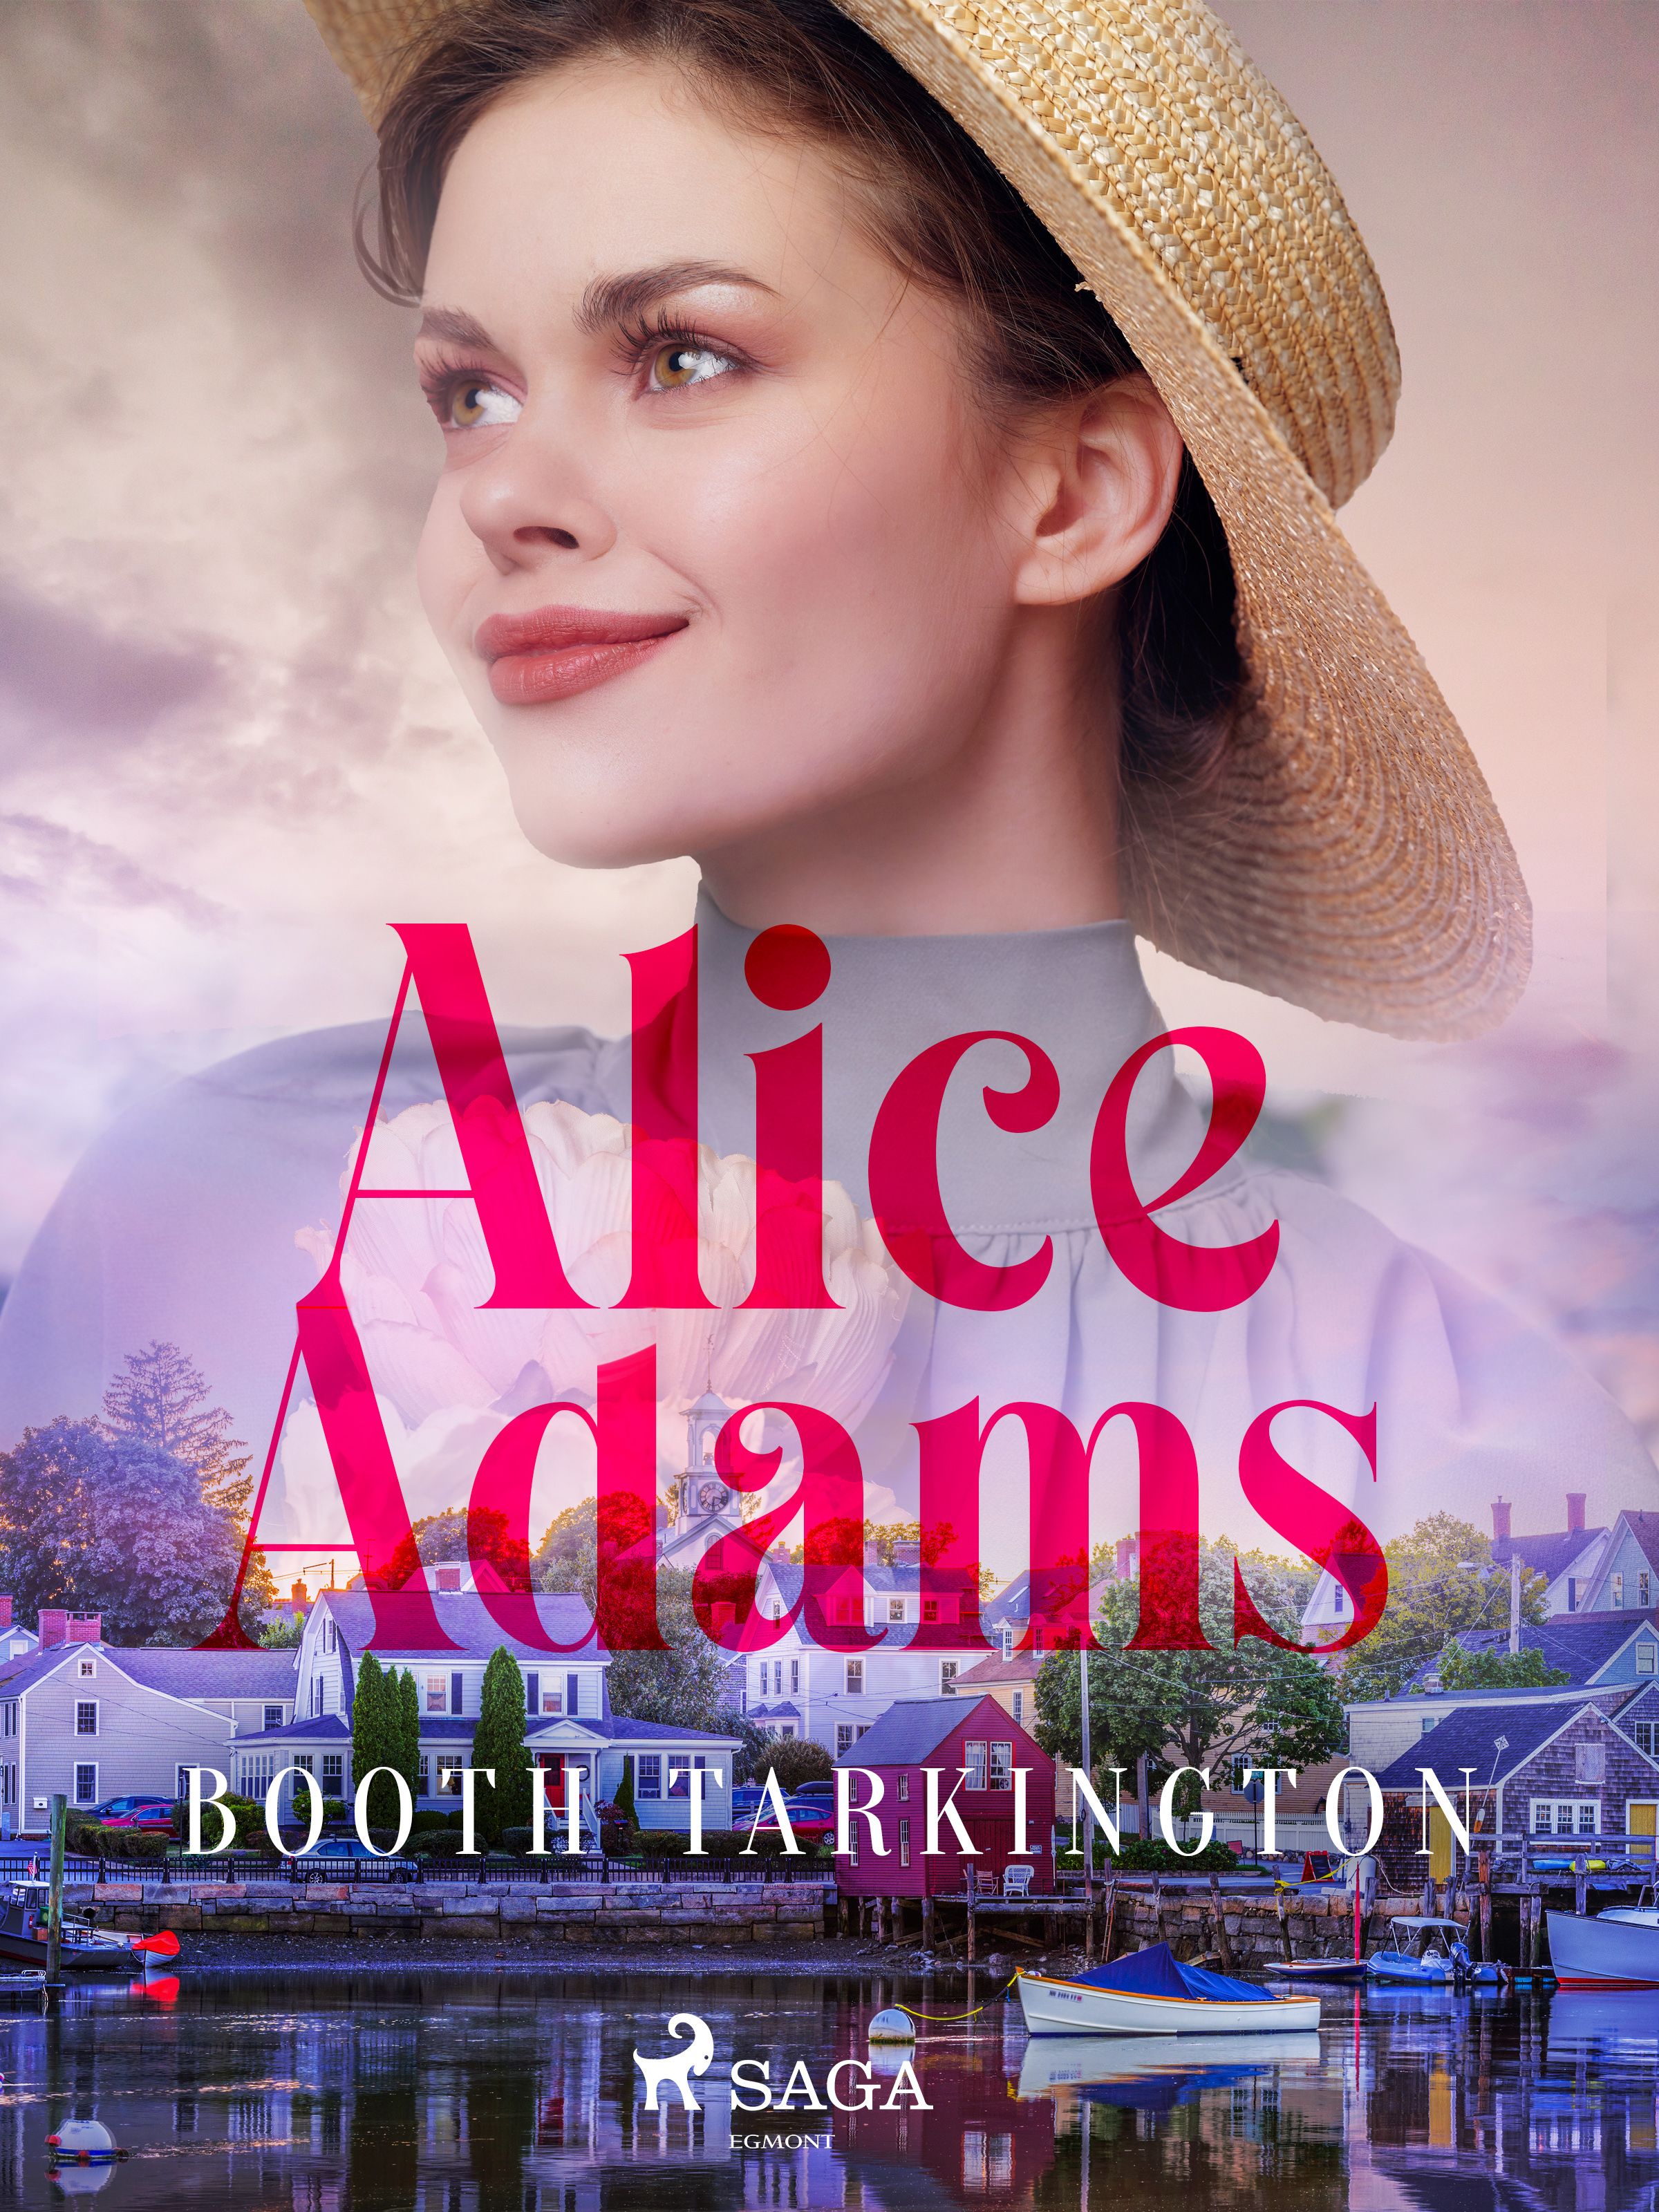 Alice Adams, e-bok av Booth Tarkington